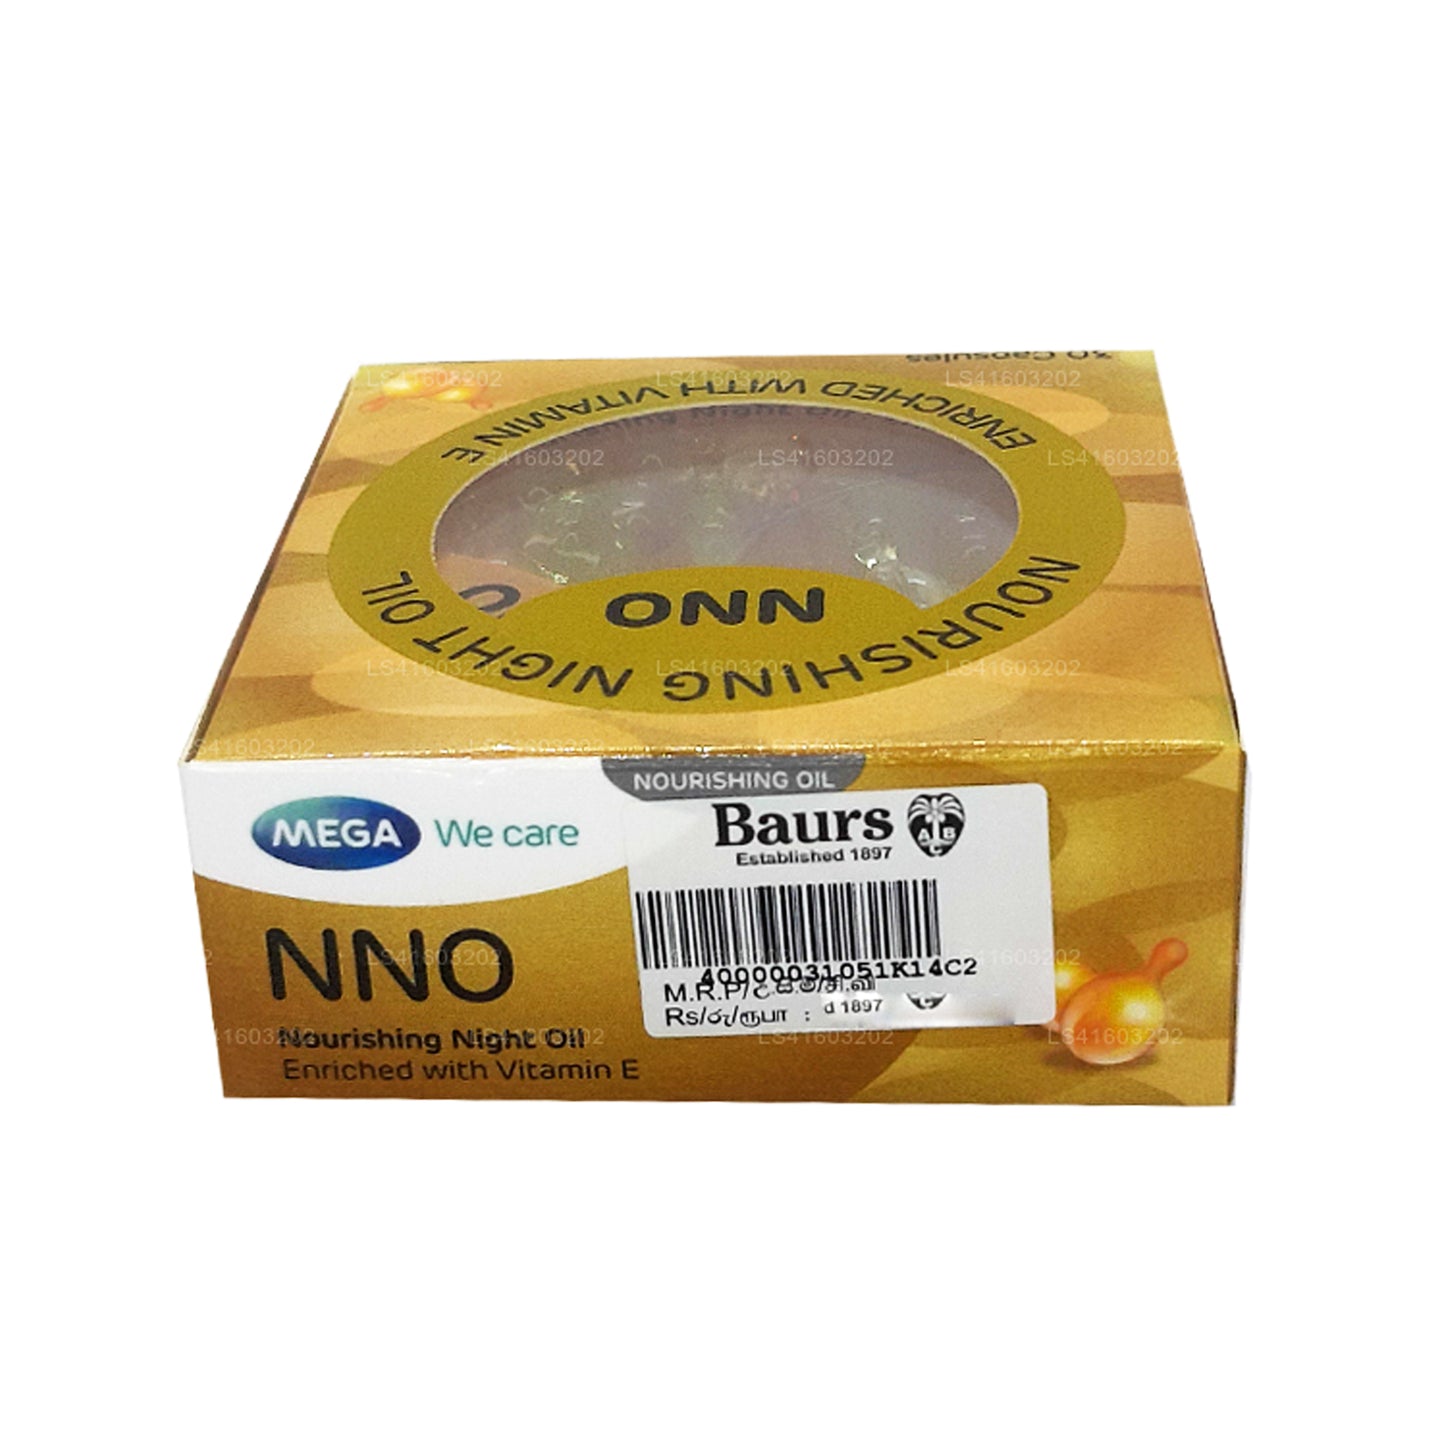 NNO Nourishing Night Oil with Vitamin E (30 Caps)